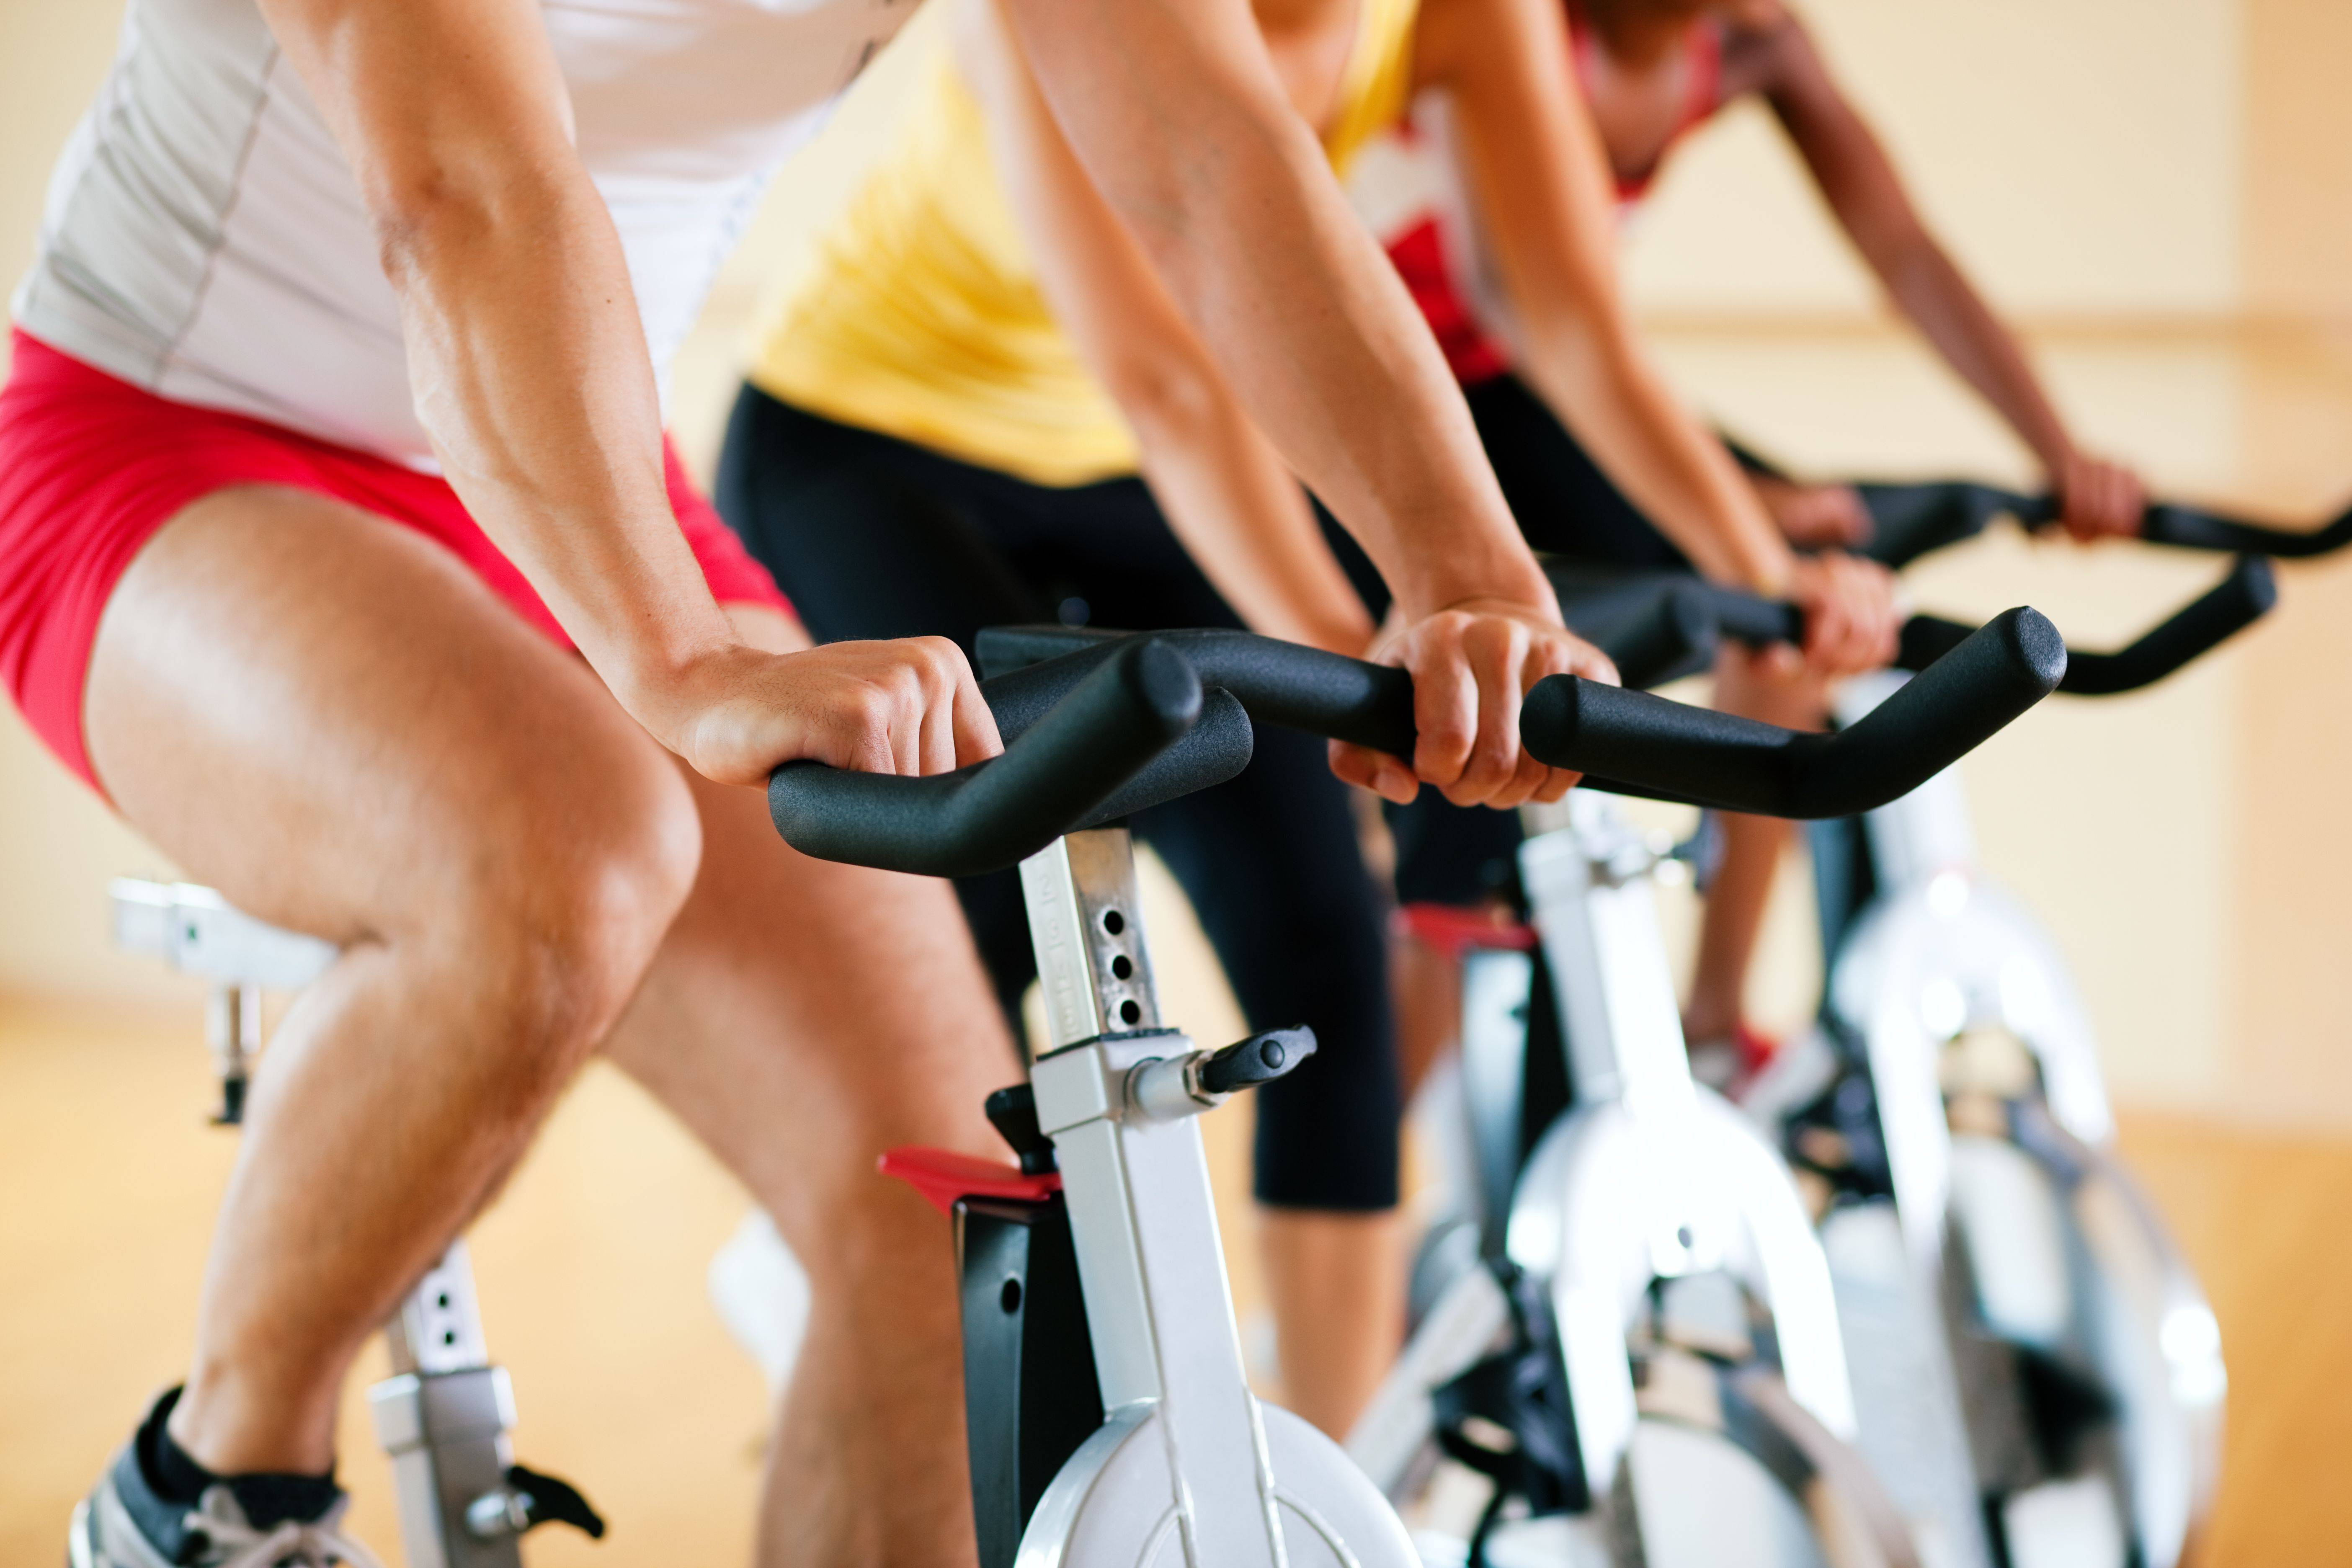 Сайклинг — фитнес на велотренажерах, способствующий быстрому снижению веса